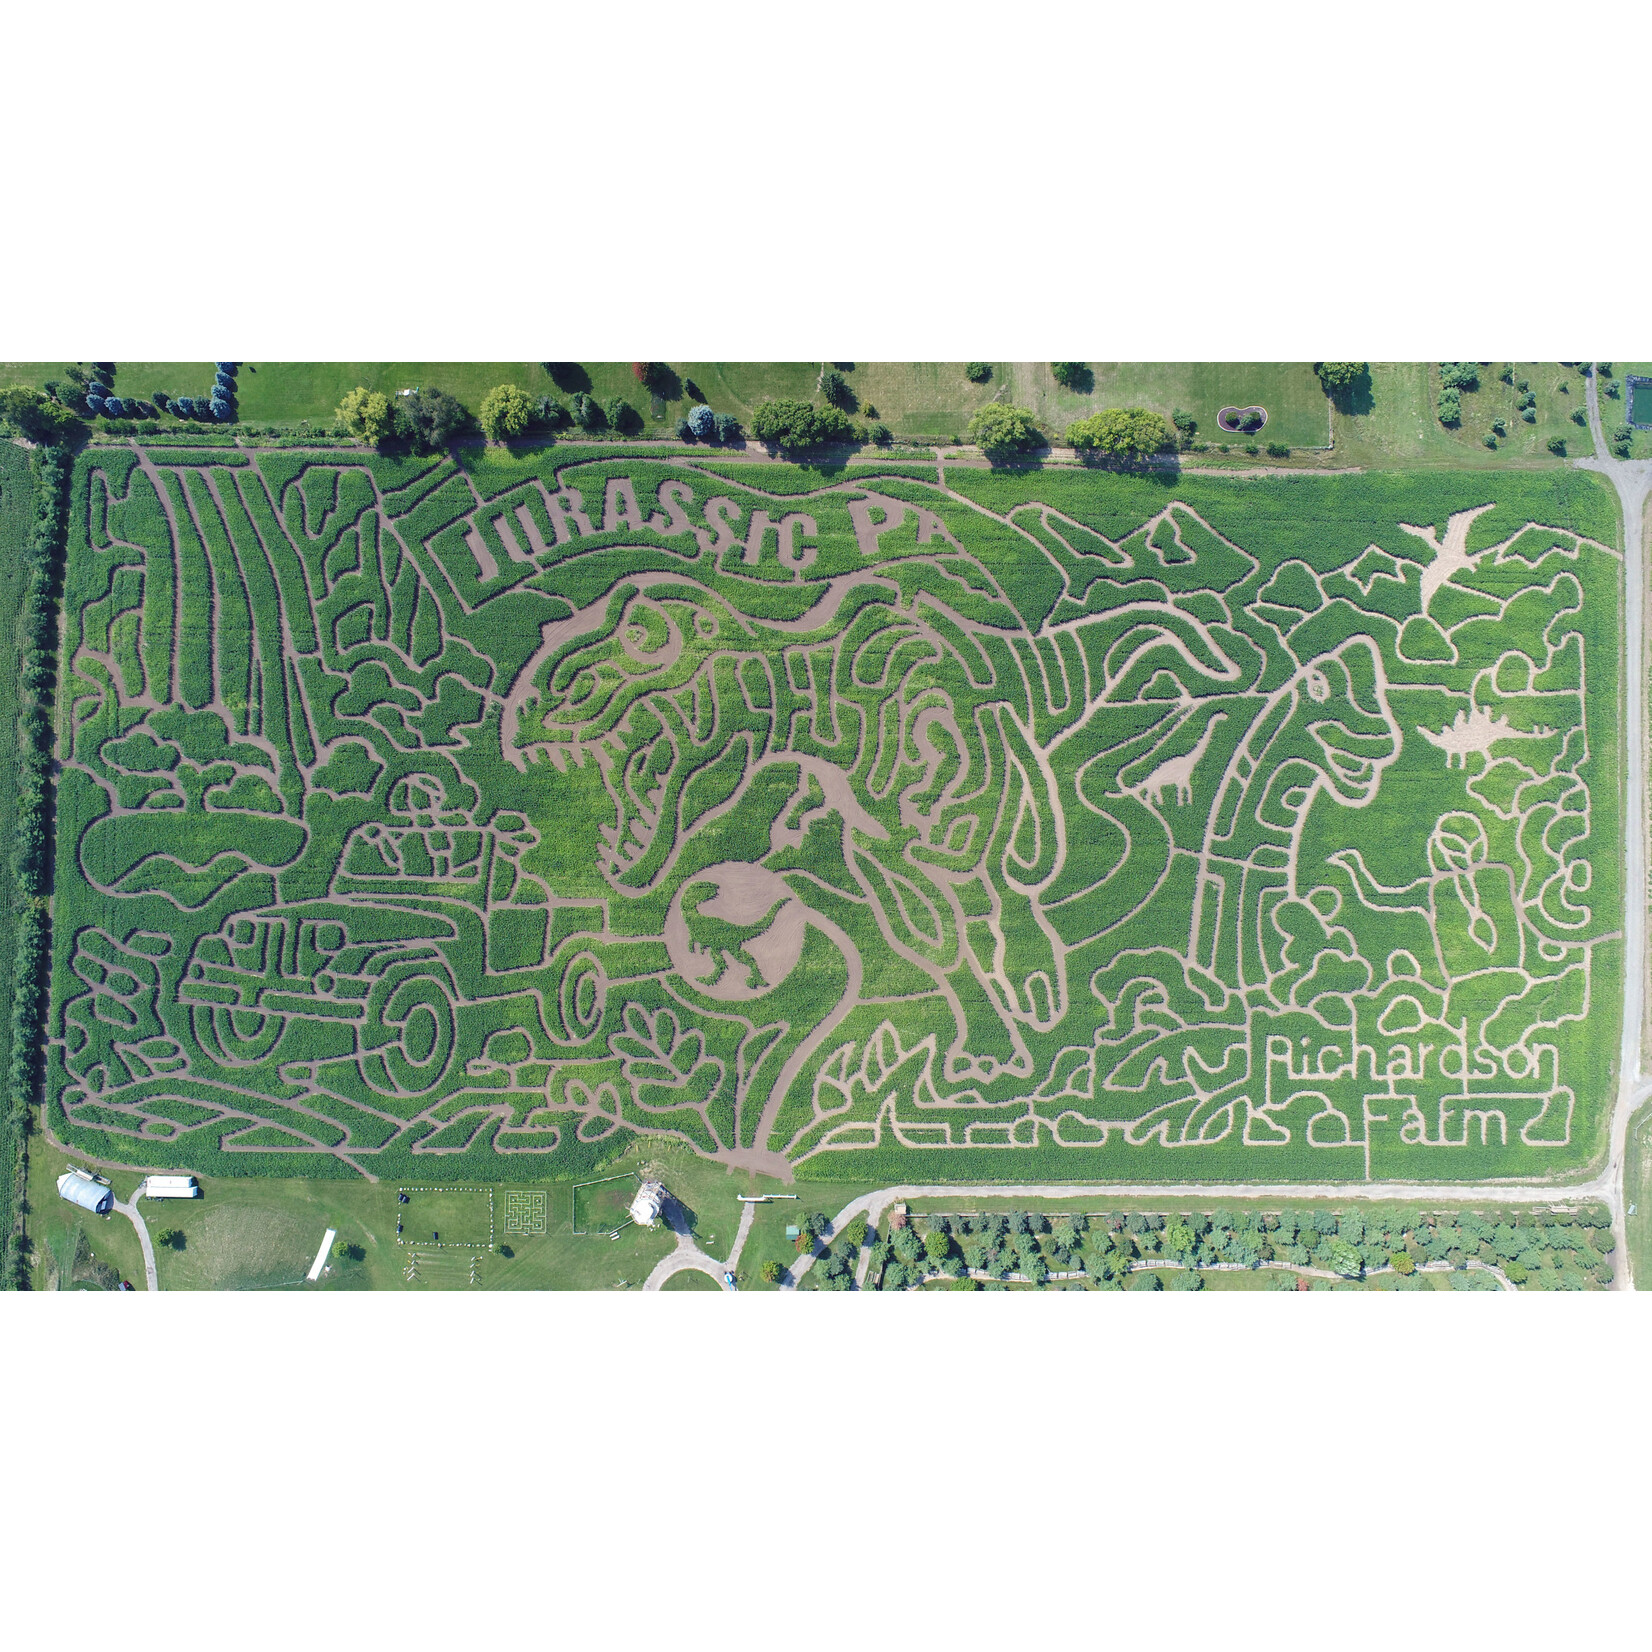 Richardson Farm Corn Maze -Spring Grove Richardson Farm Corn Maze-Spring Grove IL- OPEN THURS -SUN 9/9 to 10/29.